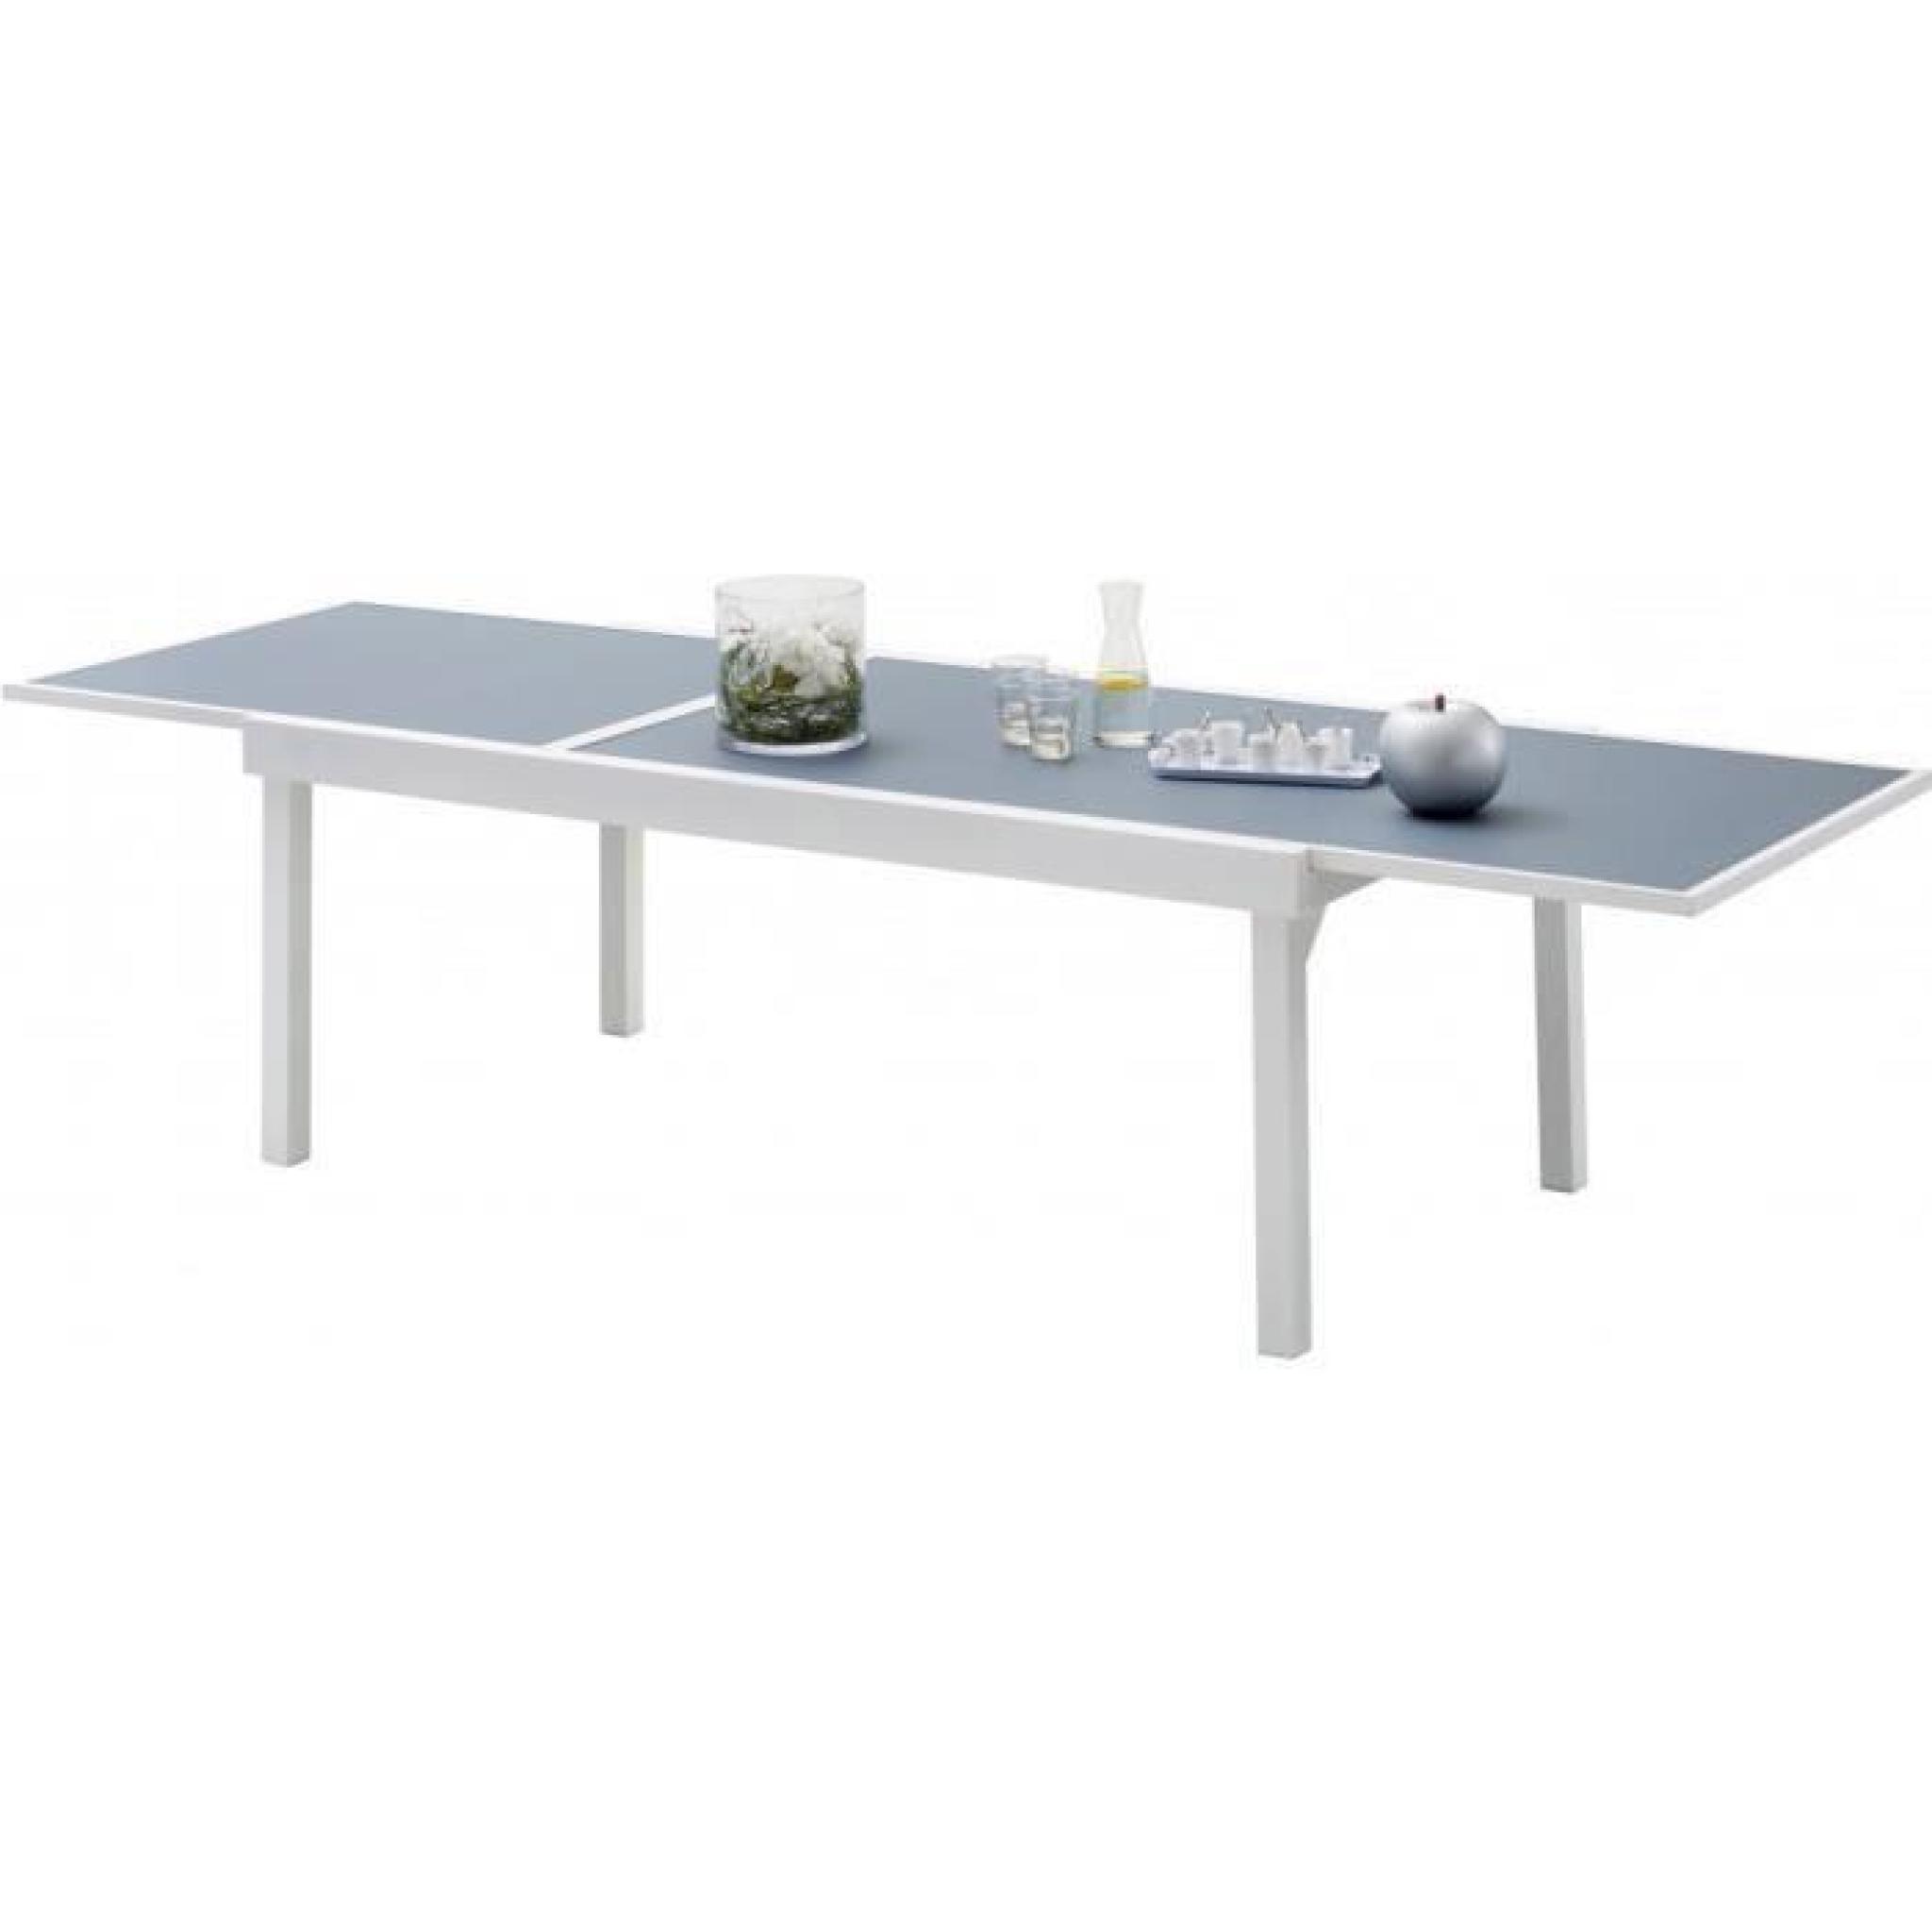 Table de jardin rectangulaire extensible aluminium blanc et verre trempé gris L135 pas cher